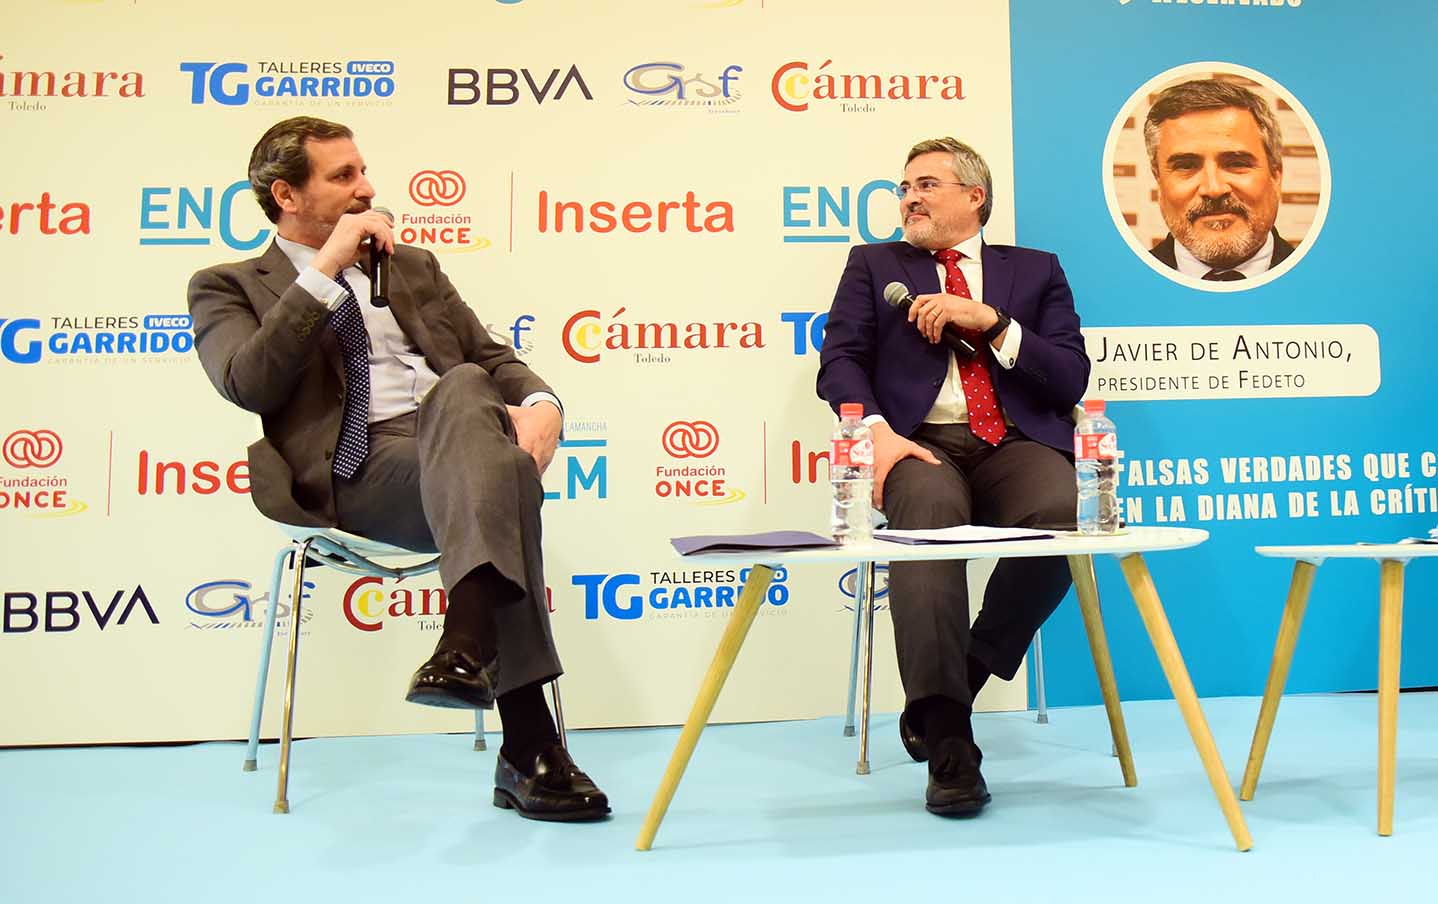 Manuel Madruga y Javier de Antonio, secretario general y presidente de Fedeto, durante el "Espacio Reservado" de ENCLM. Foto: Rebeca Arango.